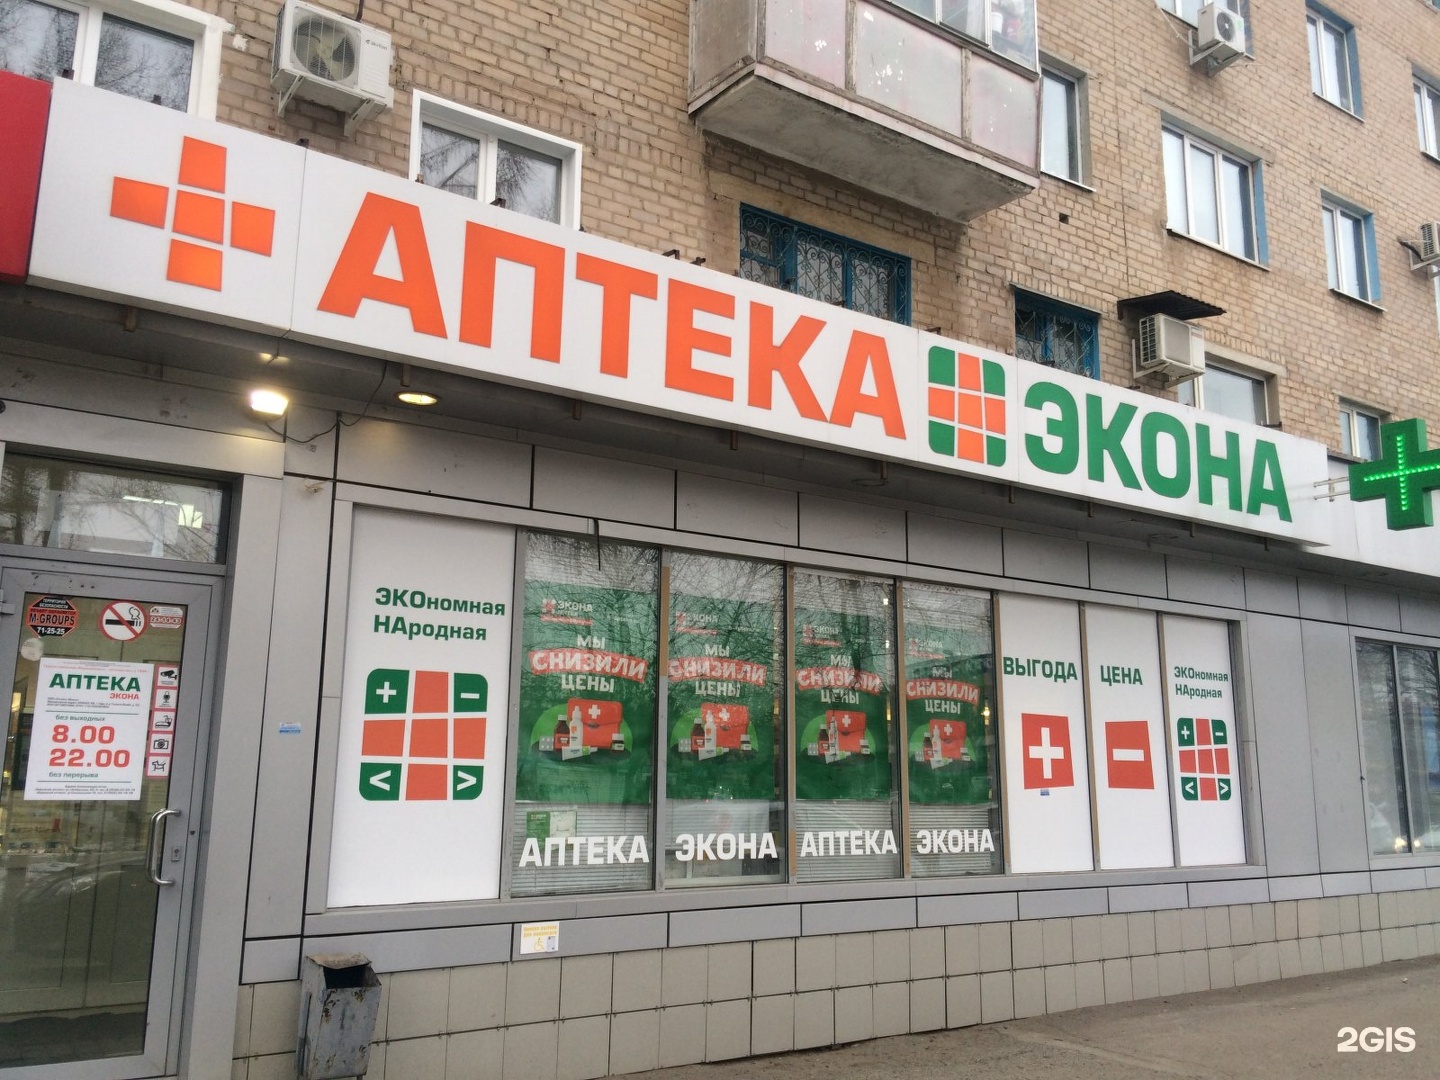 Аптека На Кирова 64